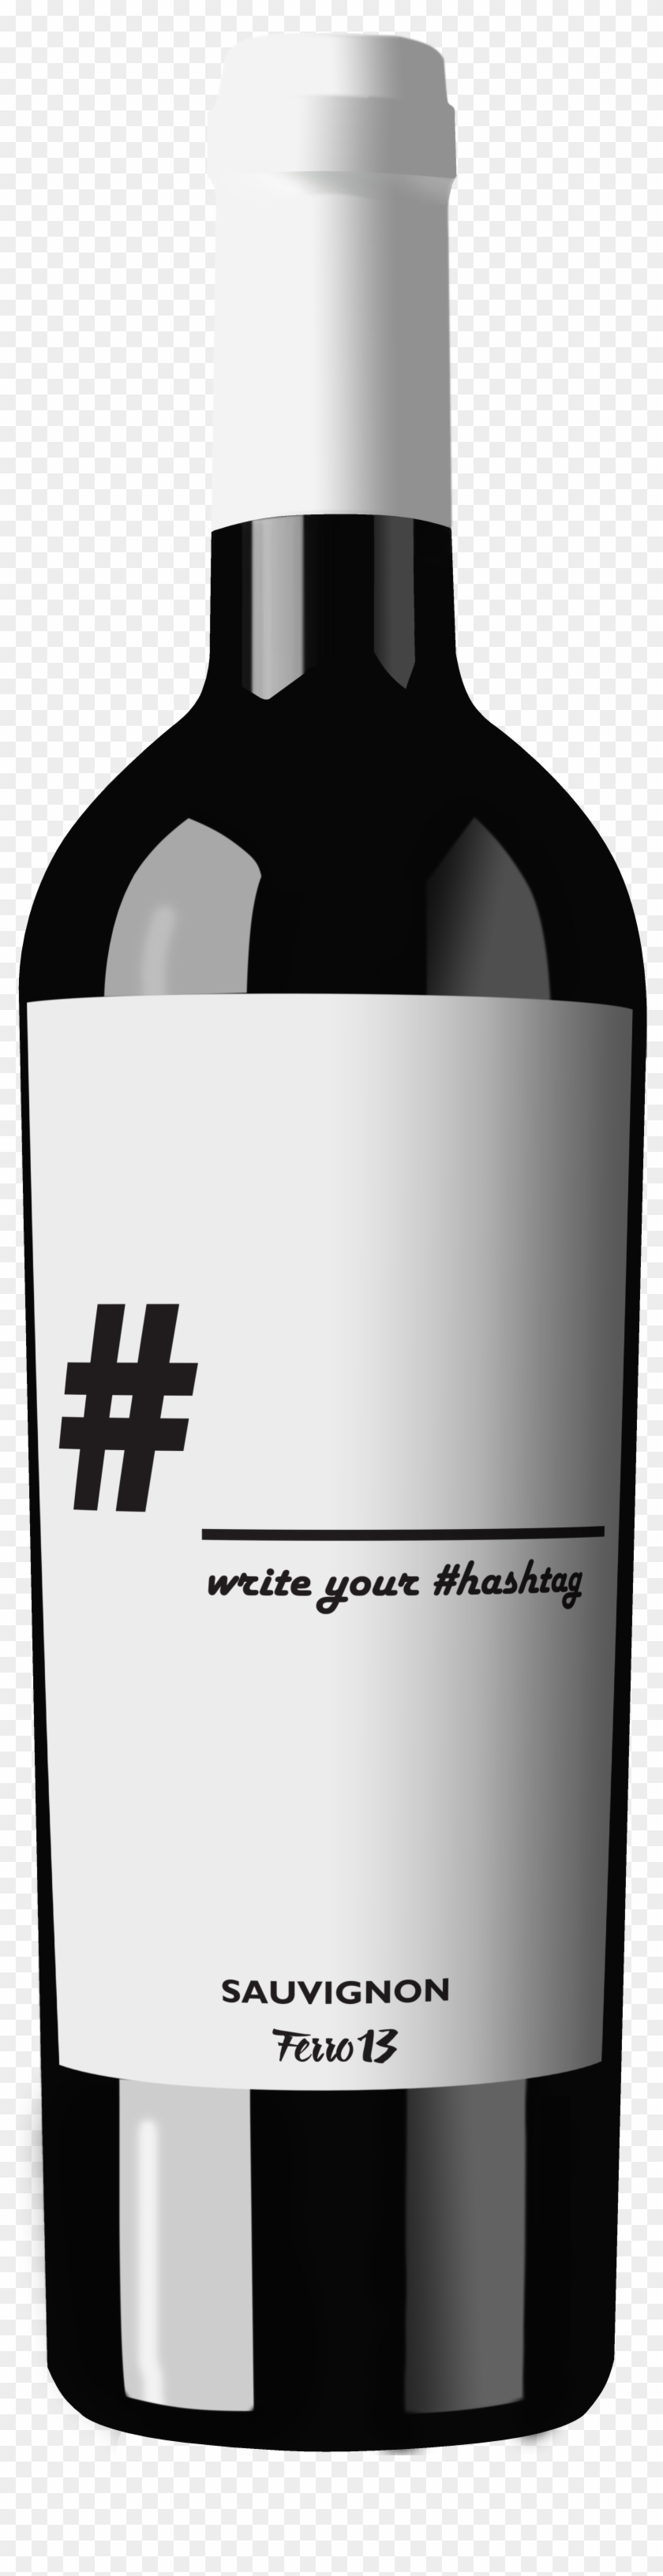 Hashtag - Sauvignon Blanc - Hashtag Sauvignon Clipart #4073007